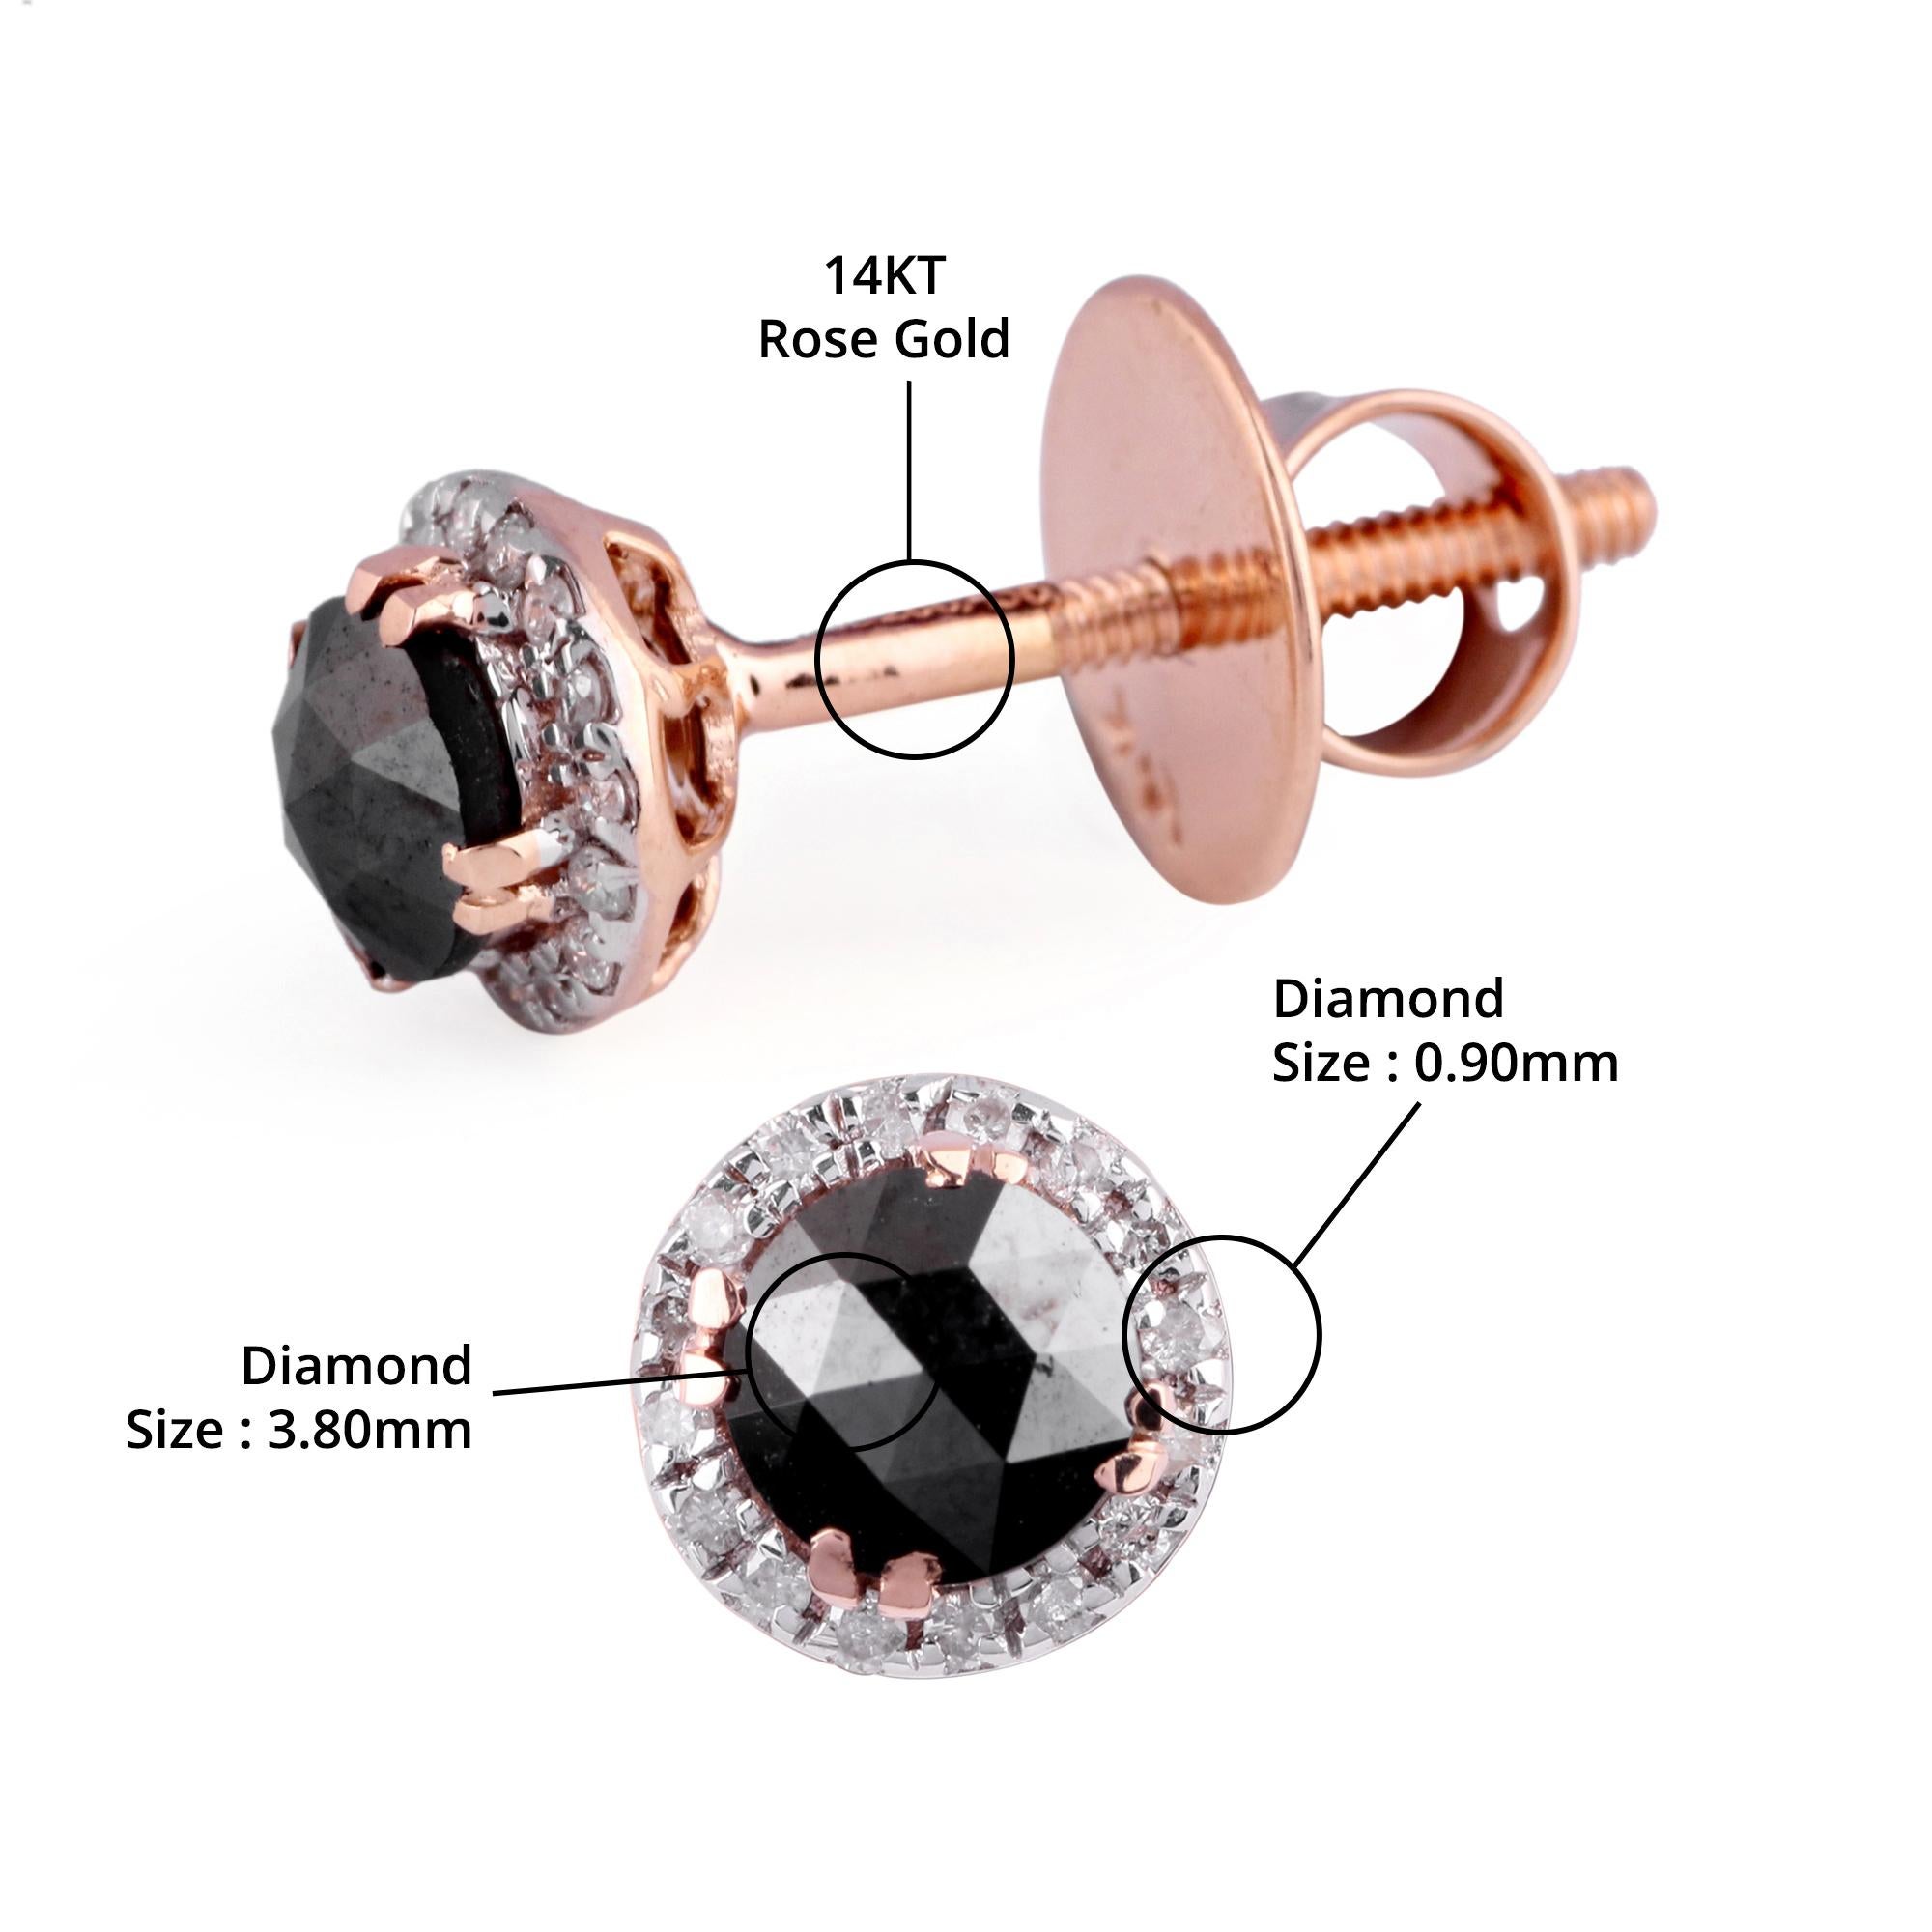 Détails de l'article:-

✦ SKU:- JER00723RRR

✦ Matériau :- Or

✦ Pureté du métal : or rose 14K 

✦ Gemstone Specification:-
✧ Diamant clair (l1/HI) rond - 0.90mm - 32 pièces
✧ Véritable diamant noir - 3.80mm - 2 pièces


✦ Approx. Poids en carats du